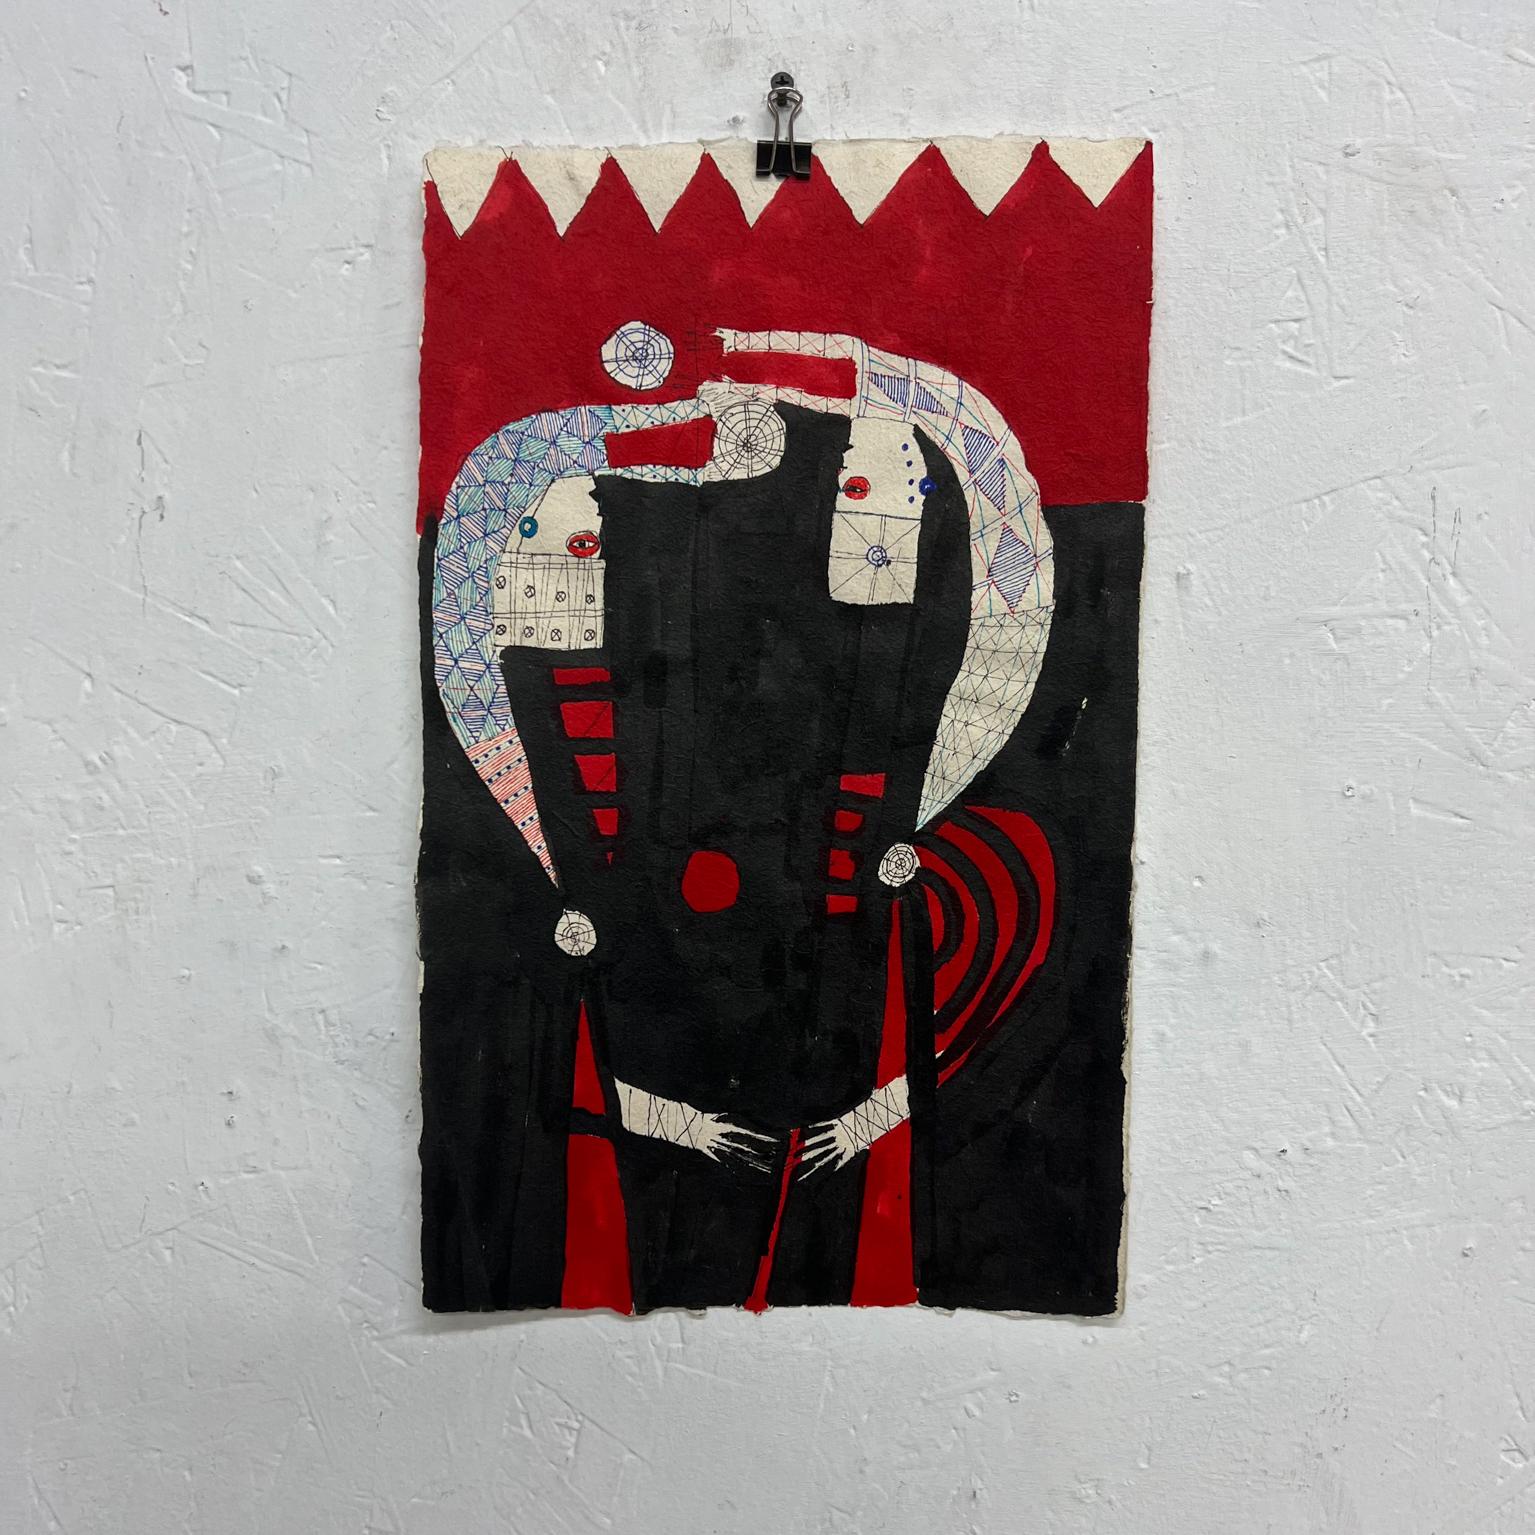 2011 Original Modern Art Oaxaca schwarz & rote Tinte Zeichnung 3 benutzerdefinierte Papier Mexiko.

Schwarze und rote Tinte auf Papier Zeichnung 3, original Art, signiert. Maßgeschneidertes Papier. Oaxacanischer Künstler.

10 x 16.5

Künstler